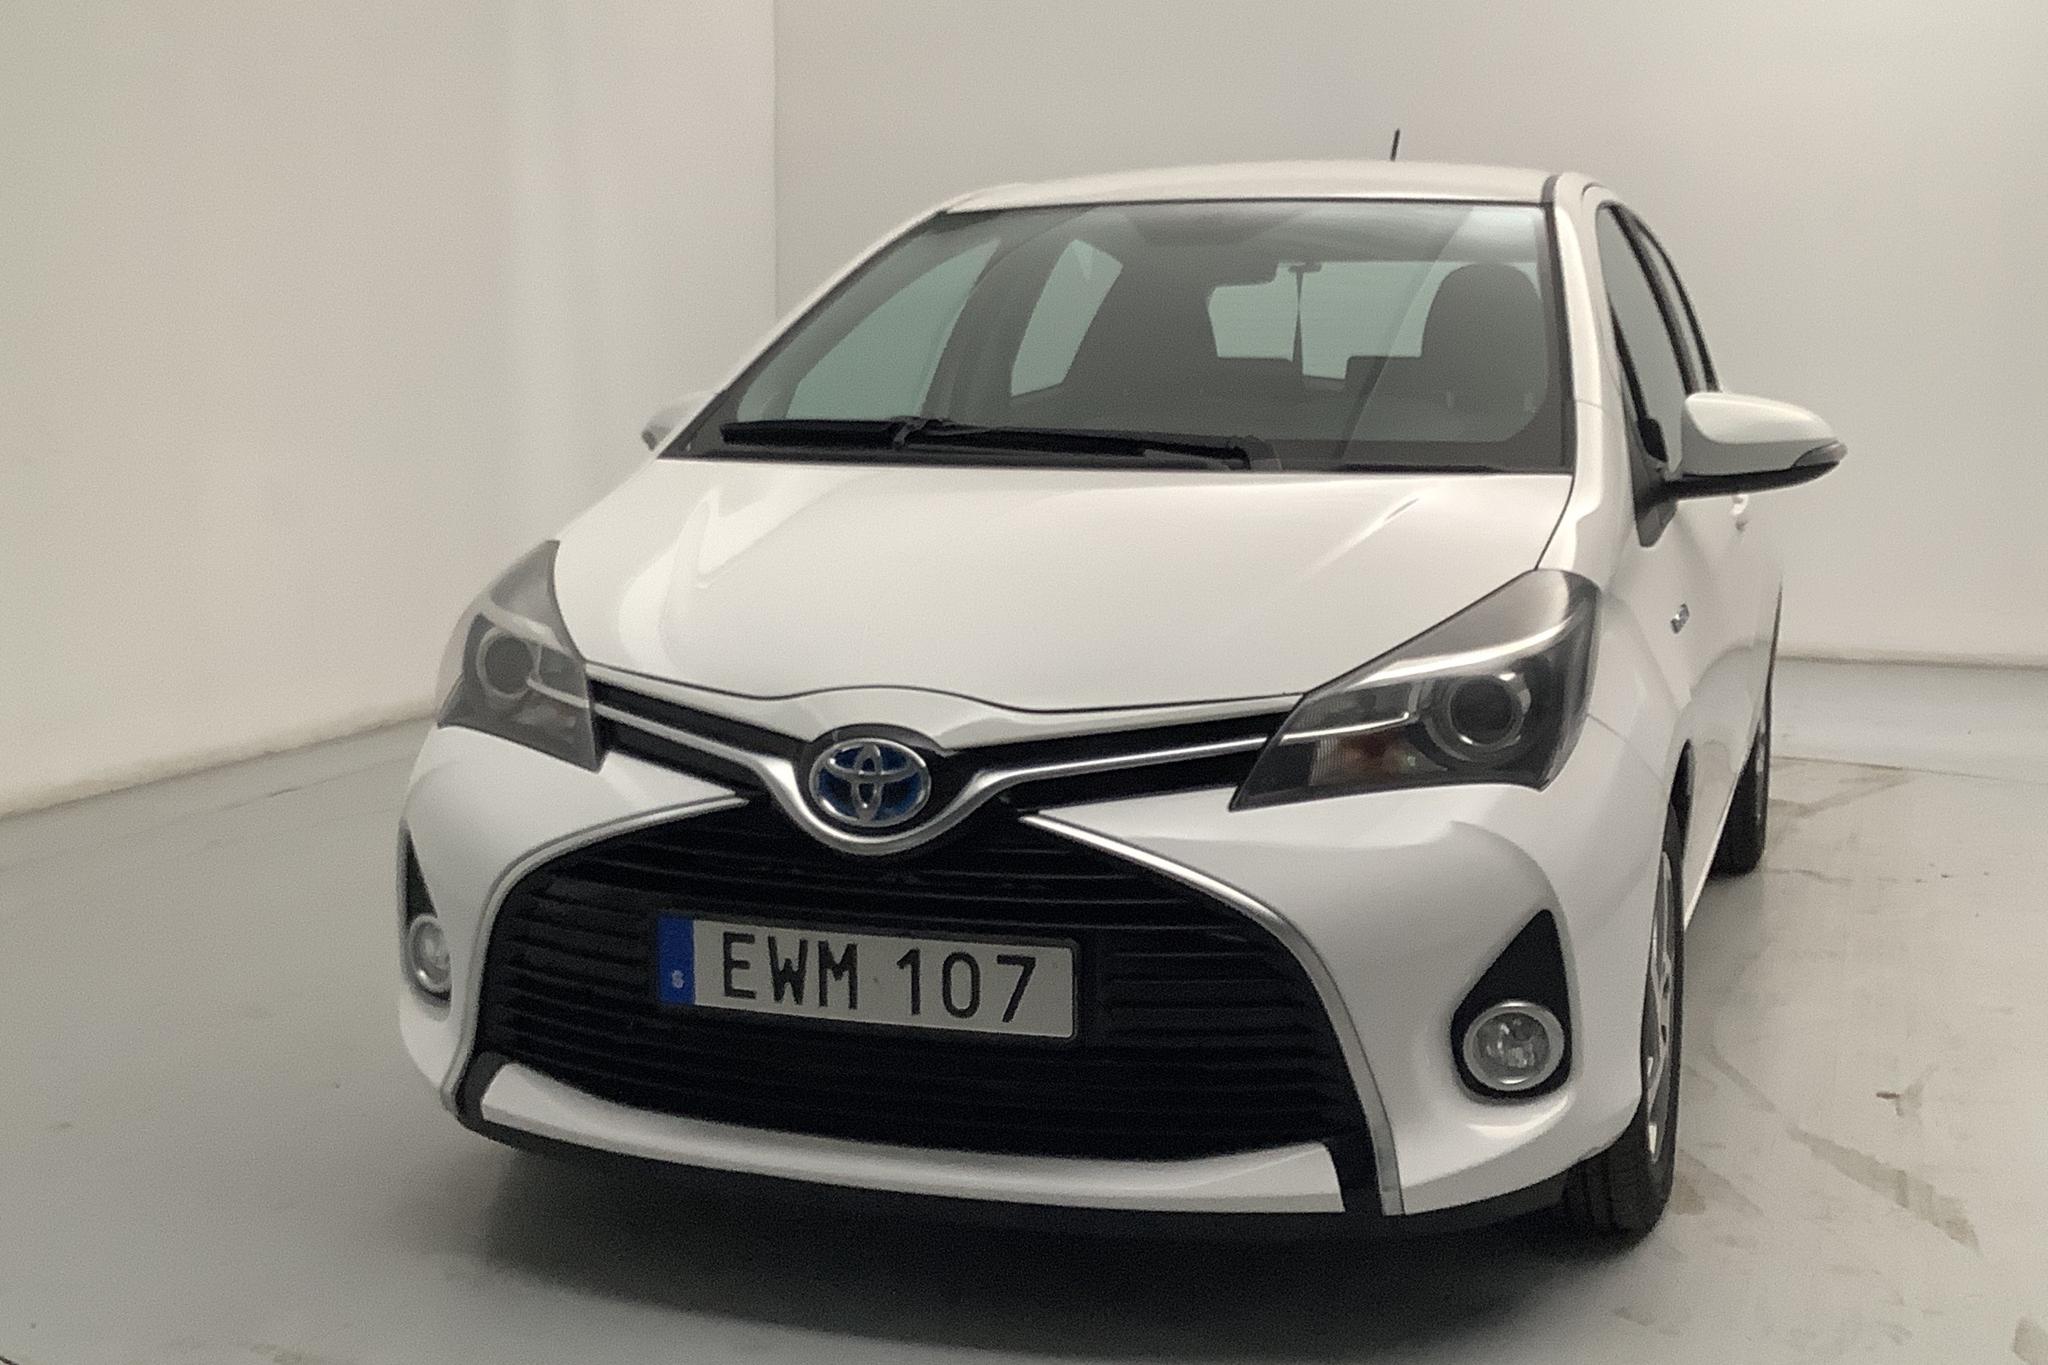 Toyota Yaris 1.5 HSD 5dr (75hk) - 72 590 km - Automatic - white - 2015